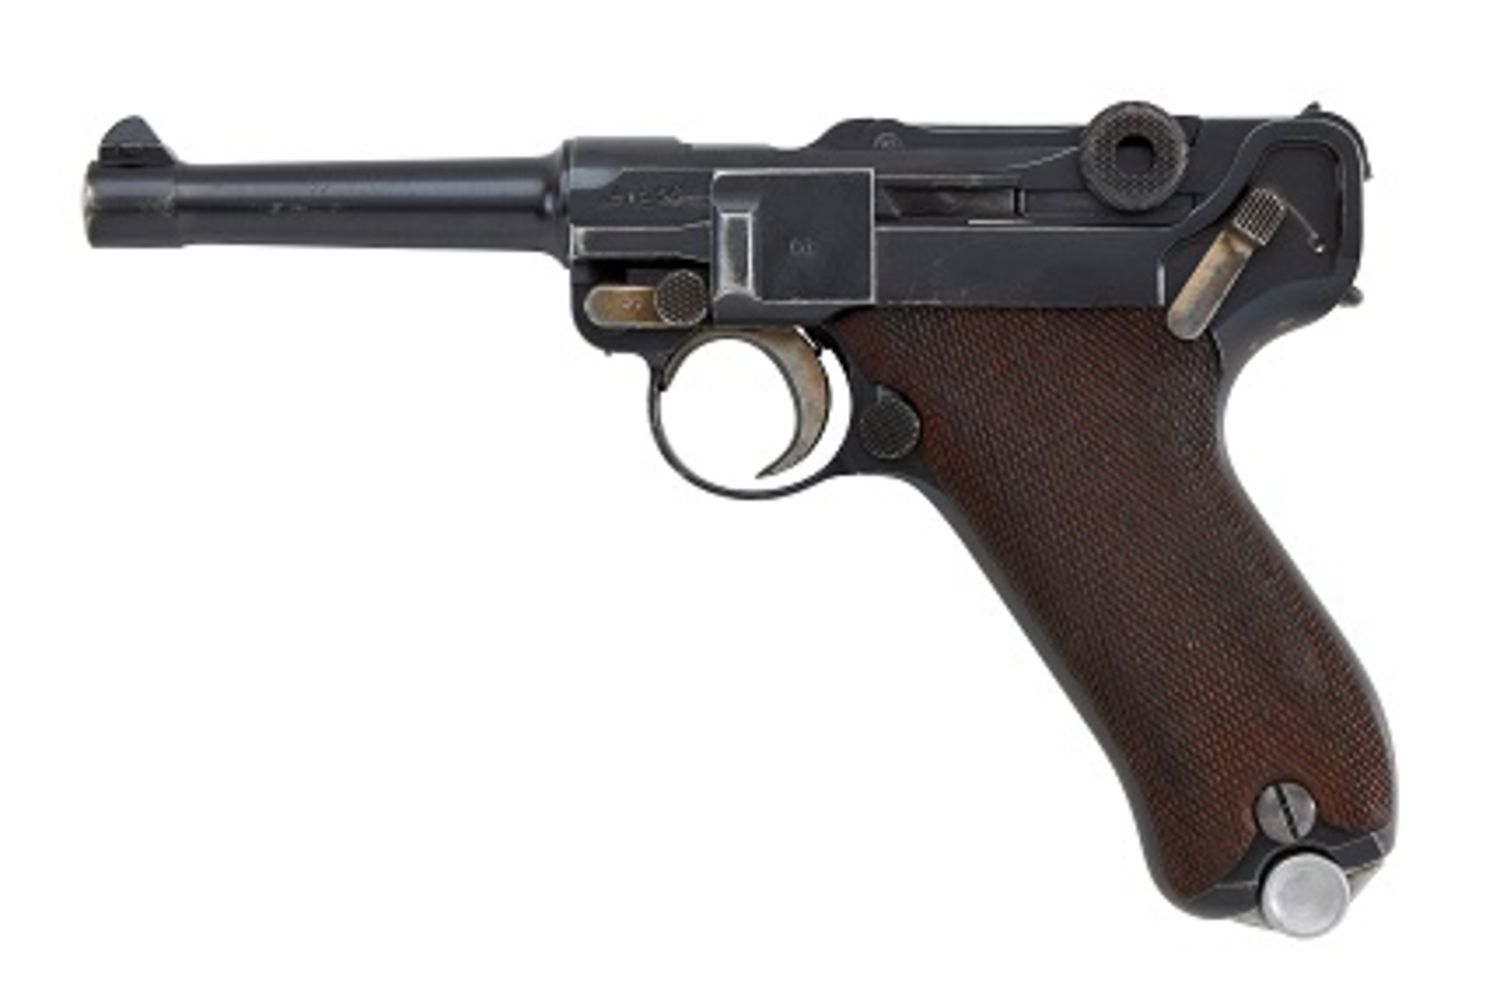 Thies & Schmid: 5th Gun Auction